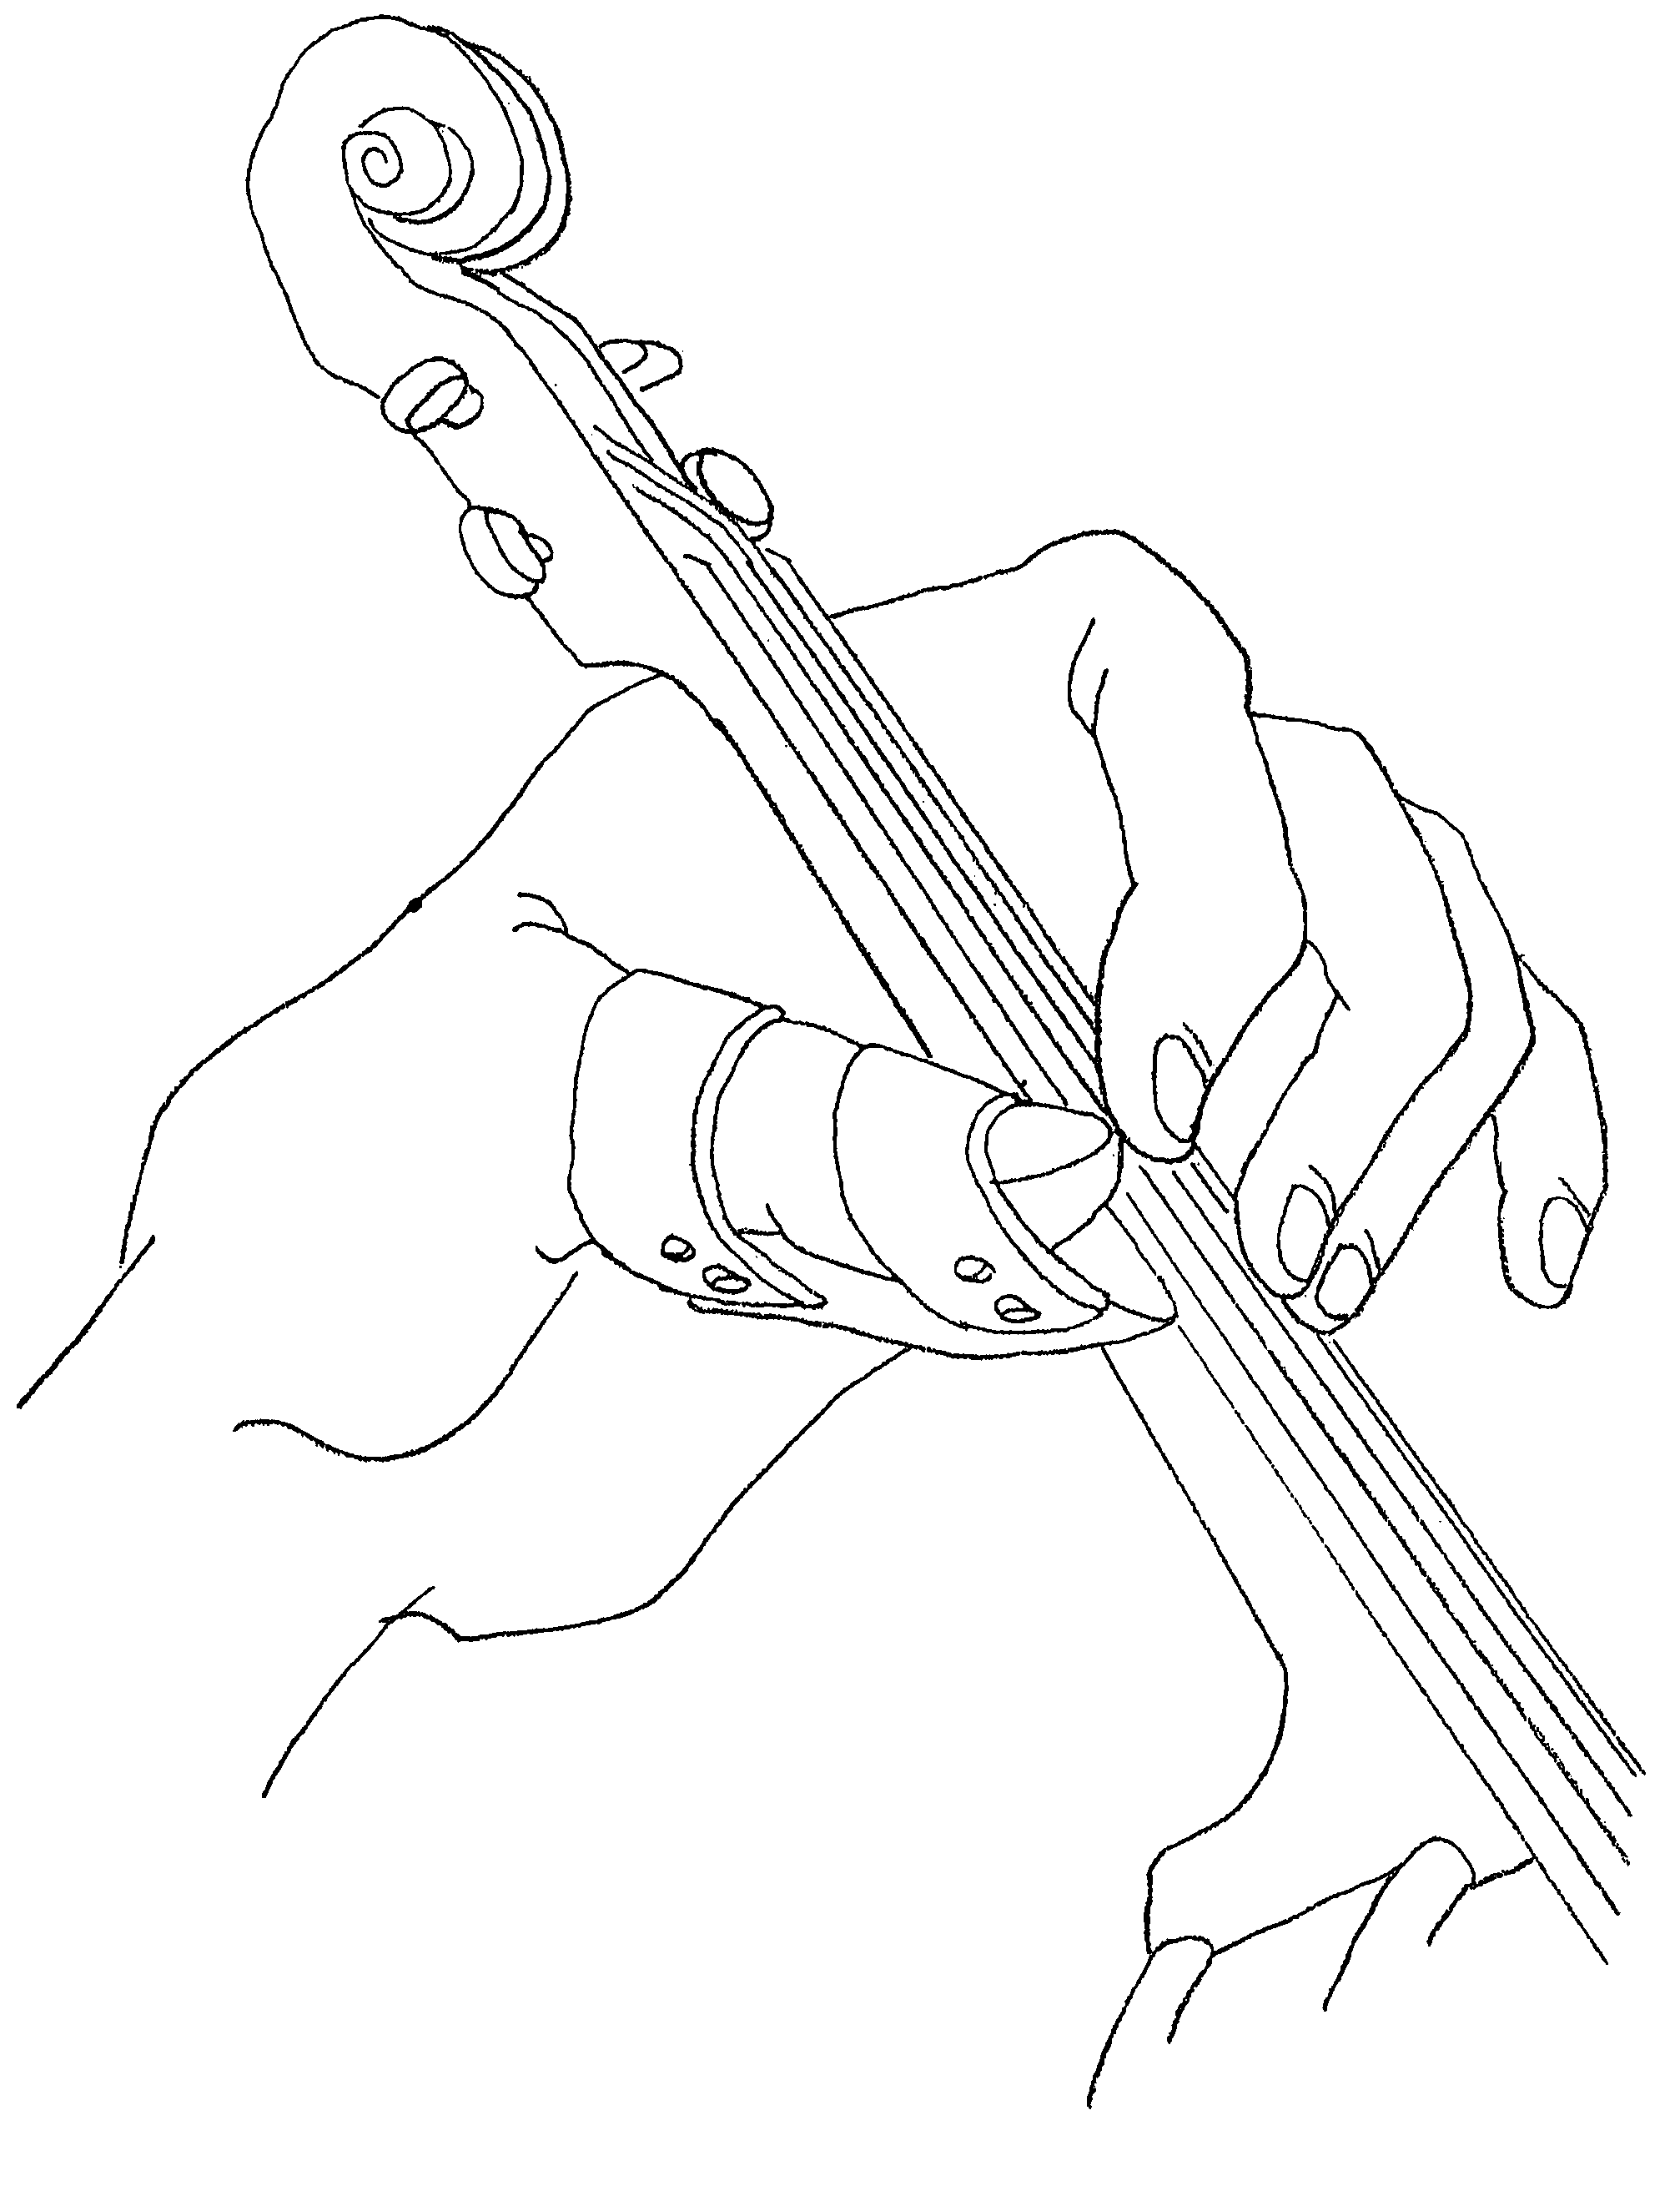 Violin thumb pad